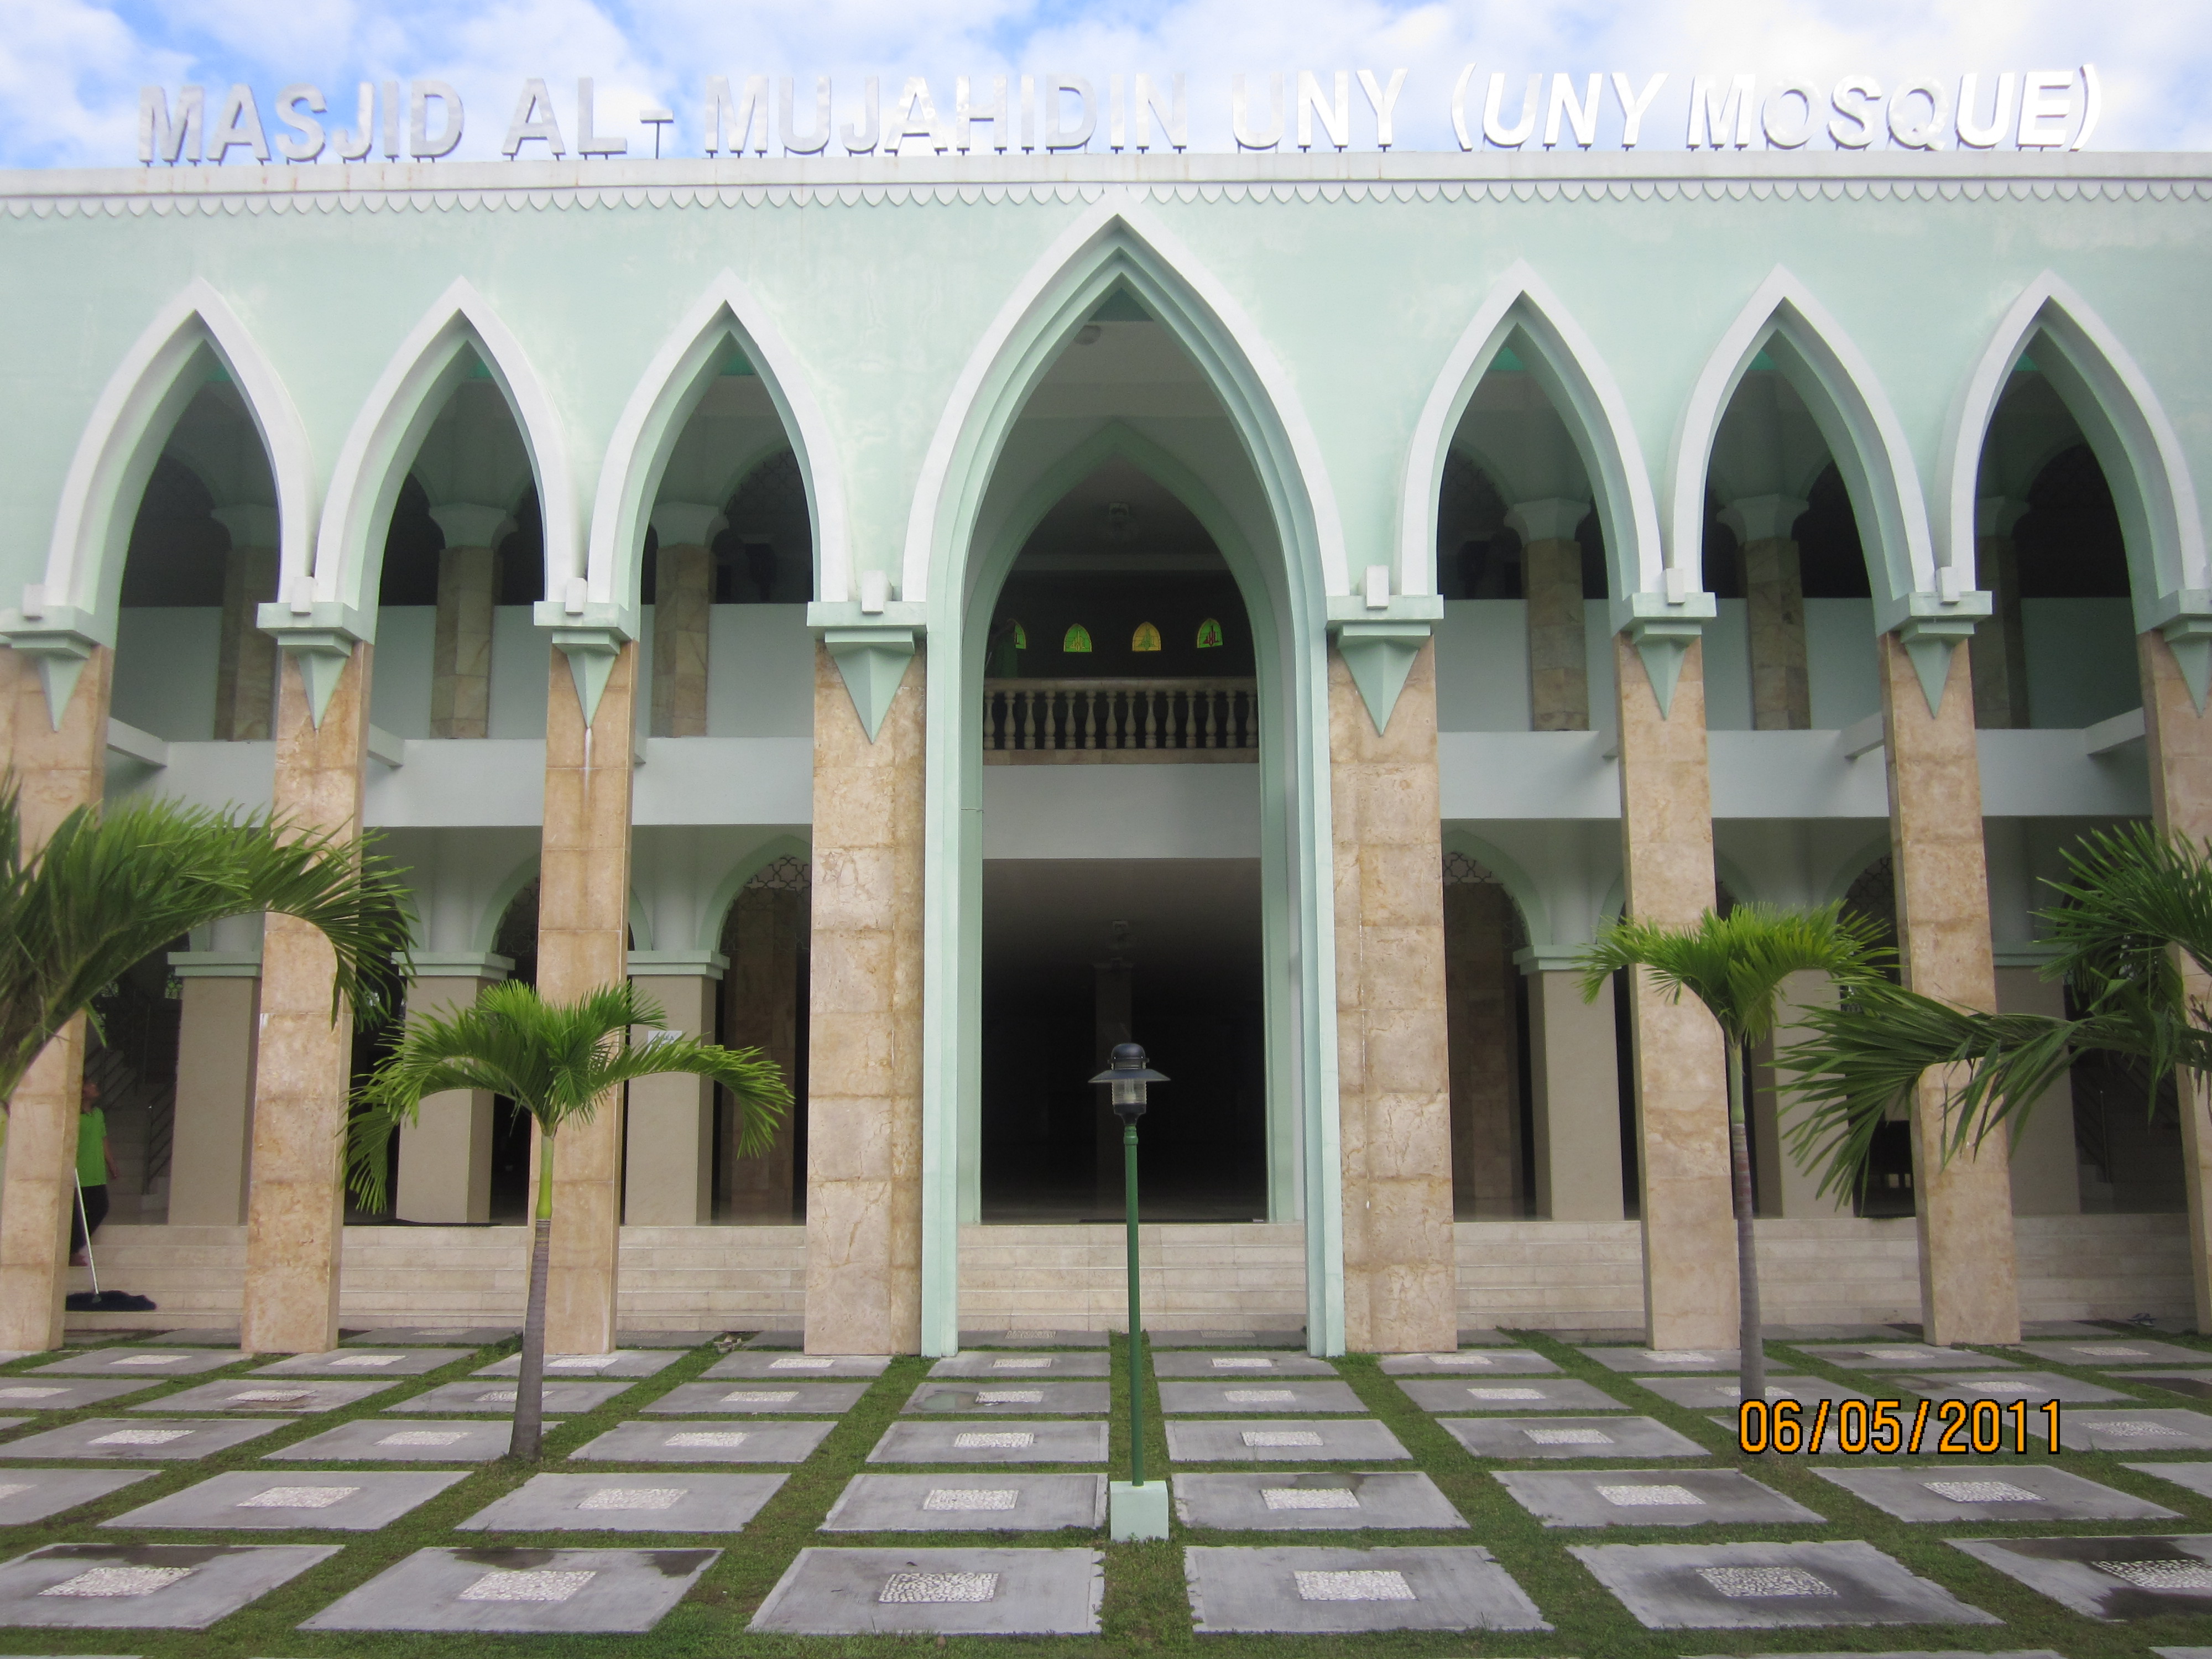 Masjid kampus adalah satu tempat yang jadi favorit untuk dikunjungi warga di perguruan tinggi Di sini kita bisa melakukan banyak hal